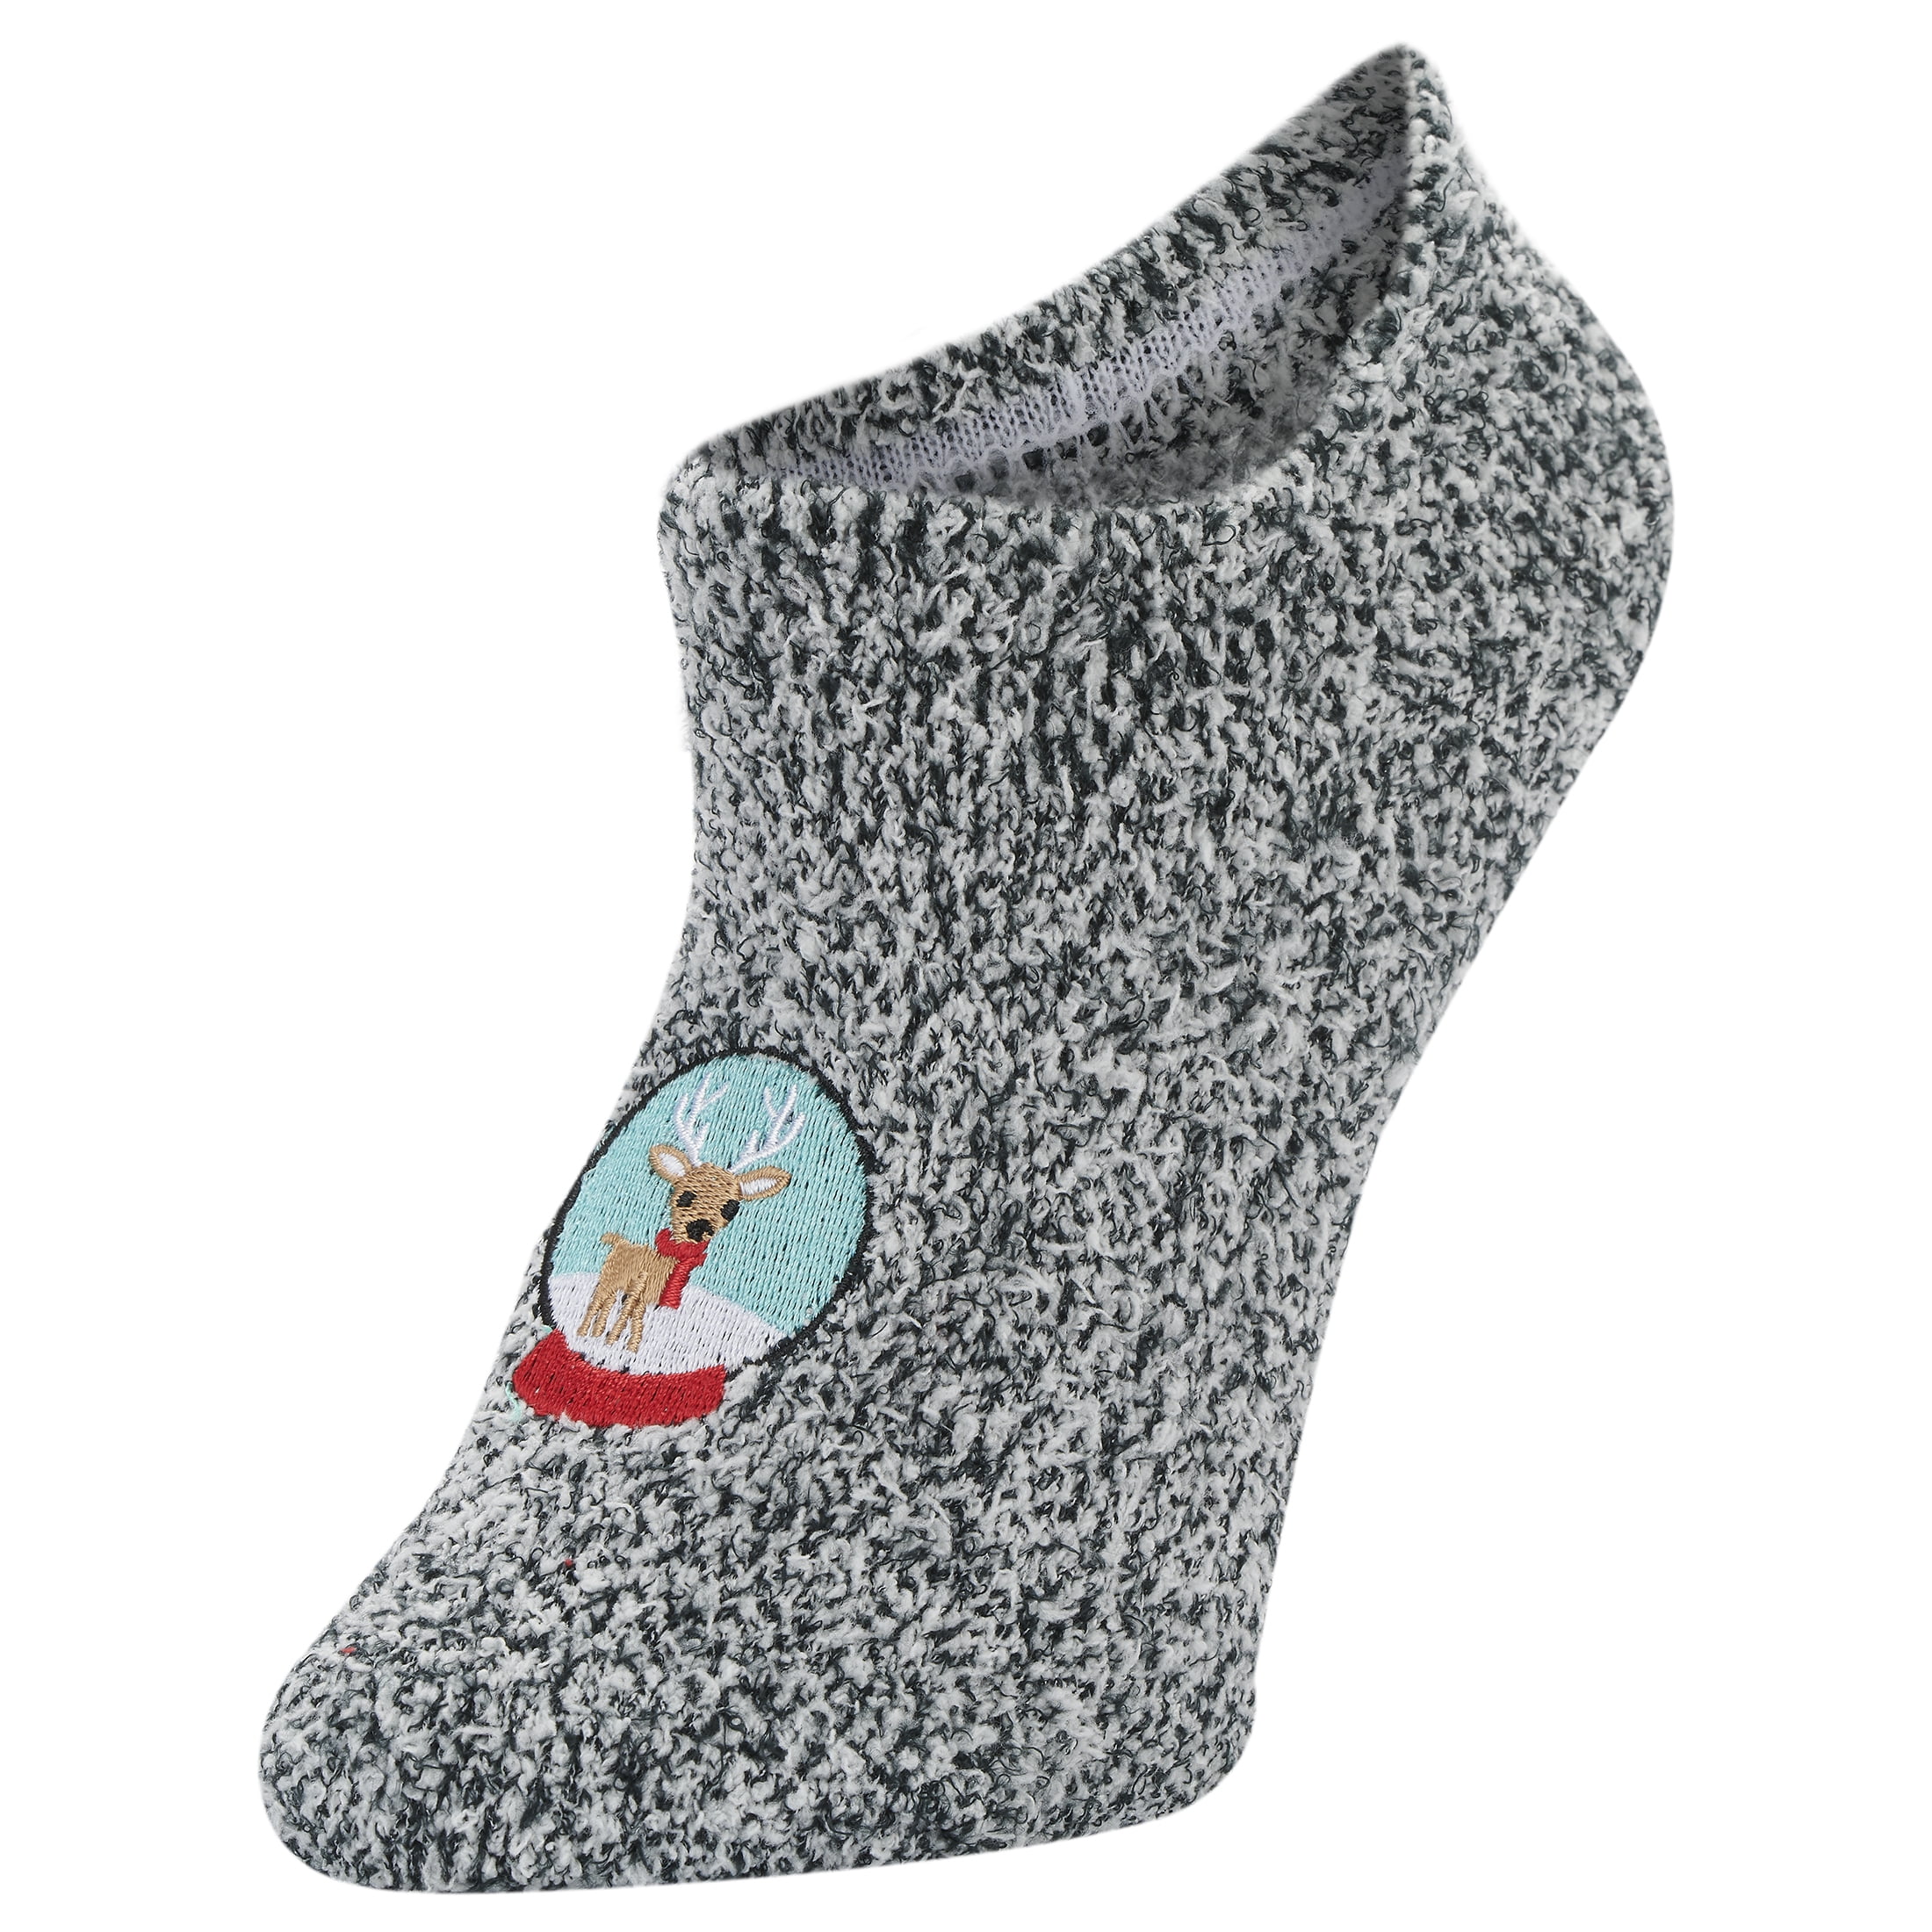 Airplus Spa Footie Sock, Reindeer Black and White Women's Medium, 5-10